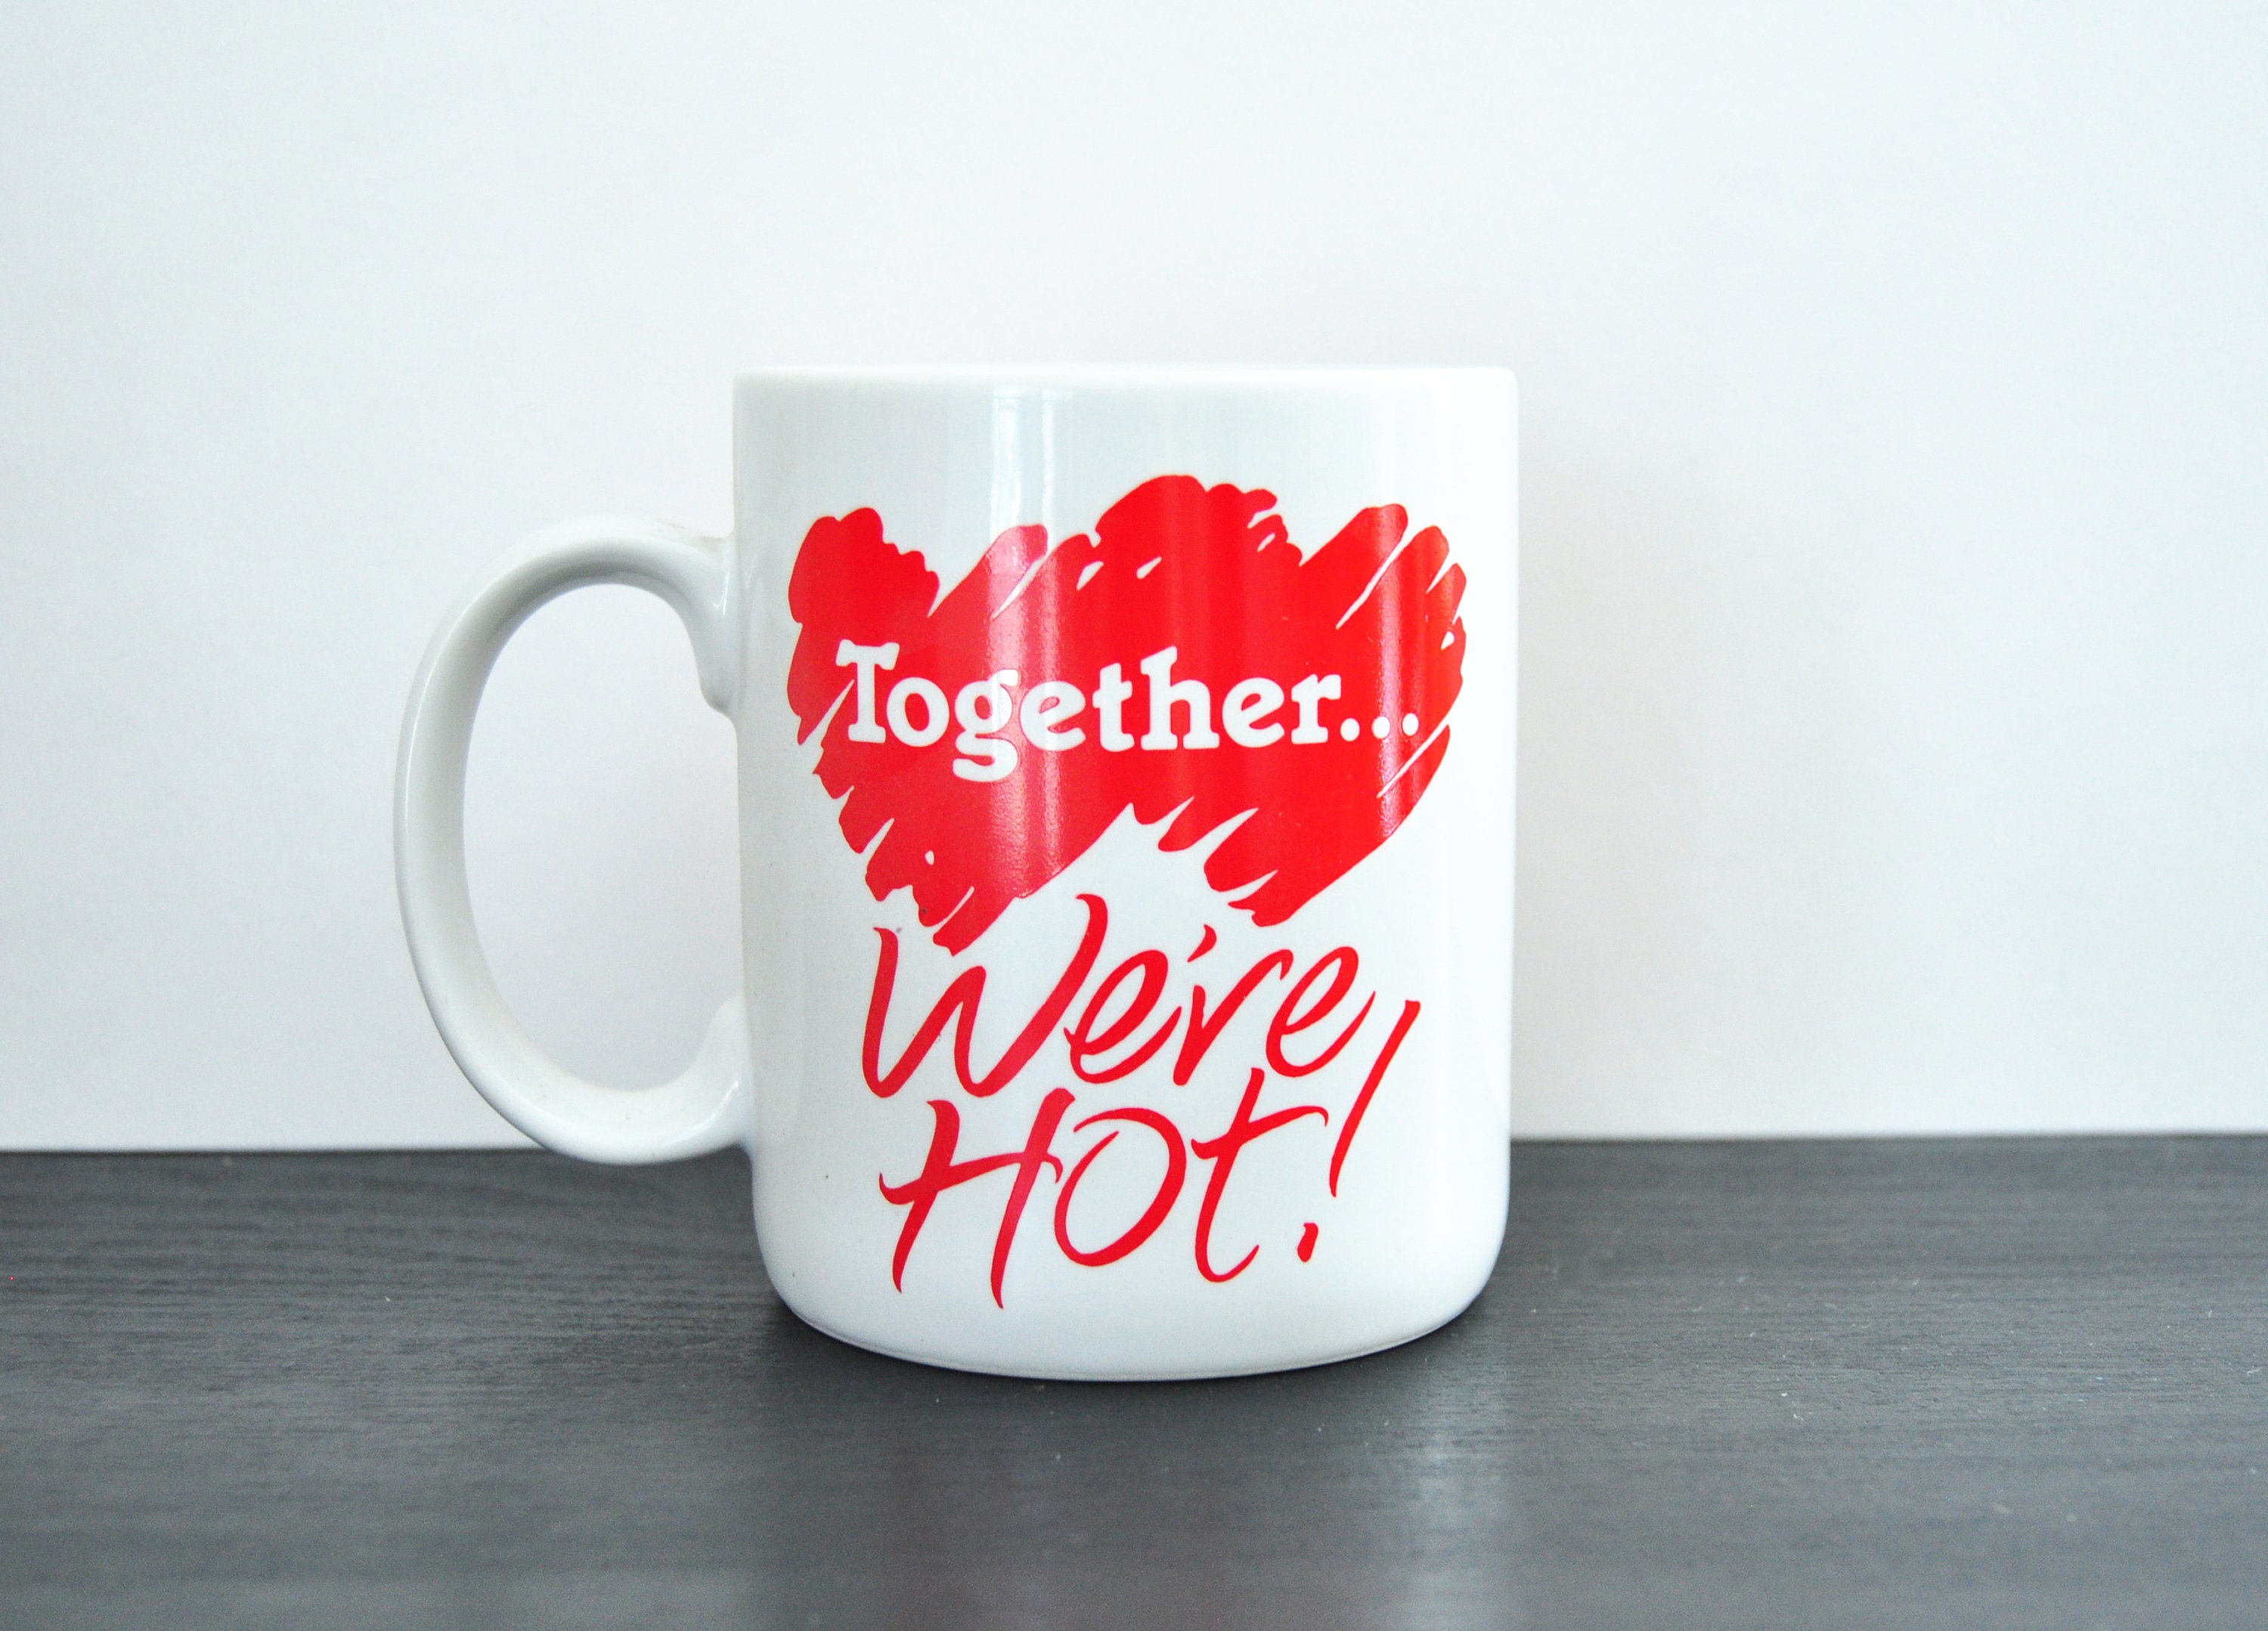 Vintage Hallmark Valentine's Day Mug, Together We're Hot